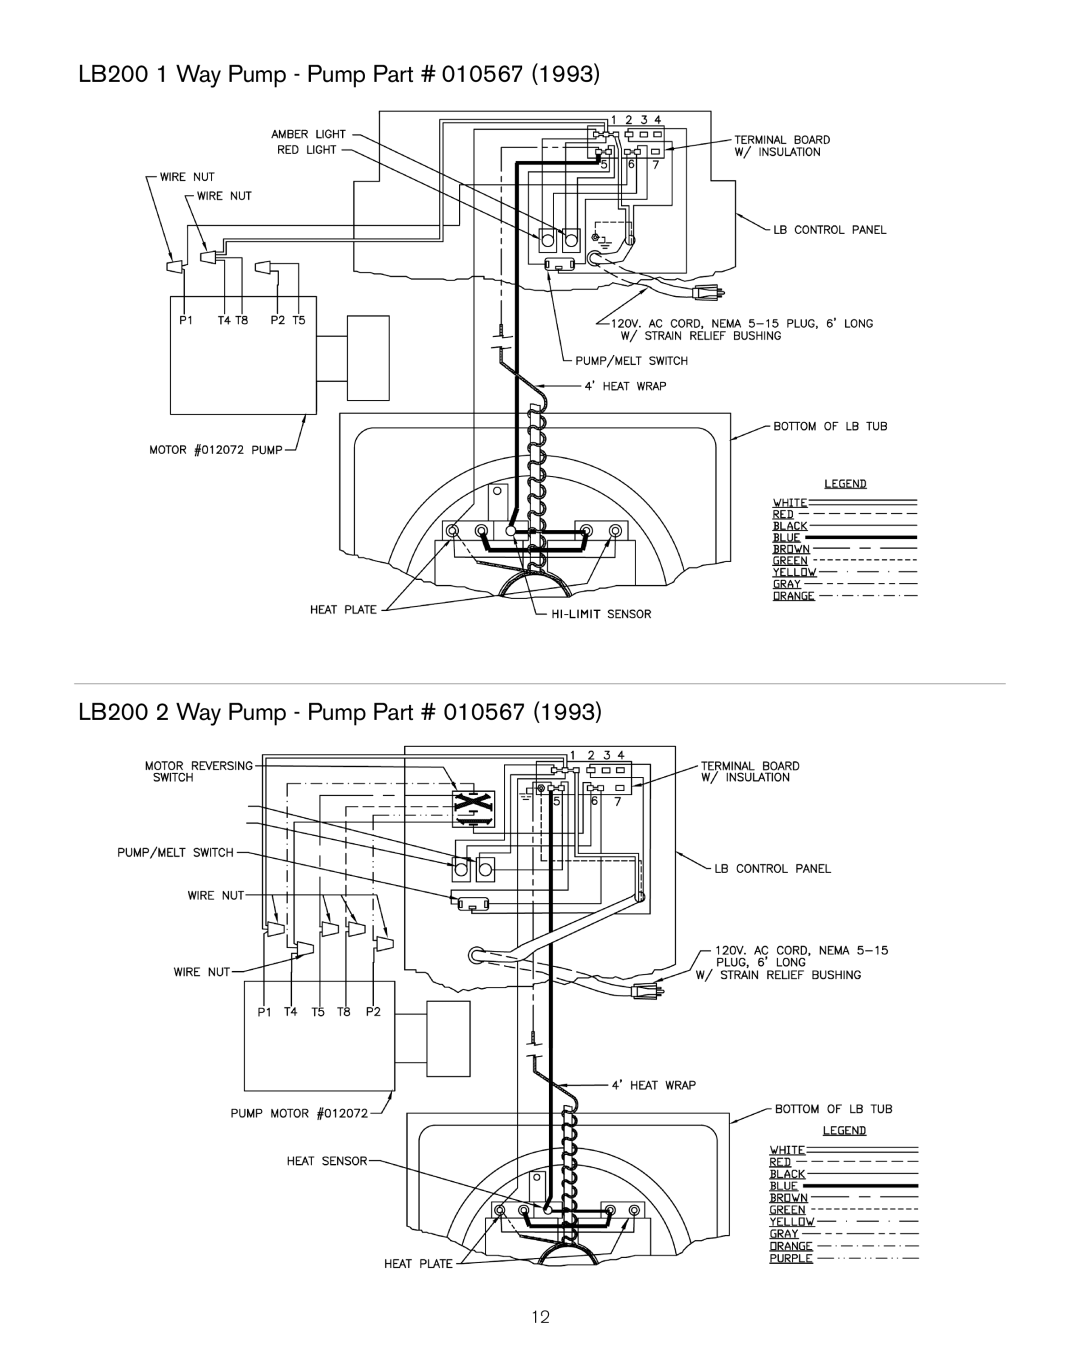 Keating Of Chicago LB-165, LB-100, PC14 owner manual LB200 1 Way Pump - Pump, LB200 2 Way Pump - Pump 